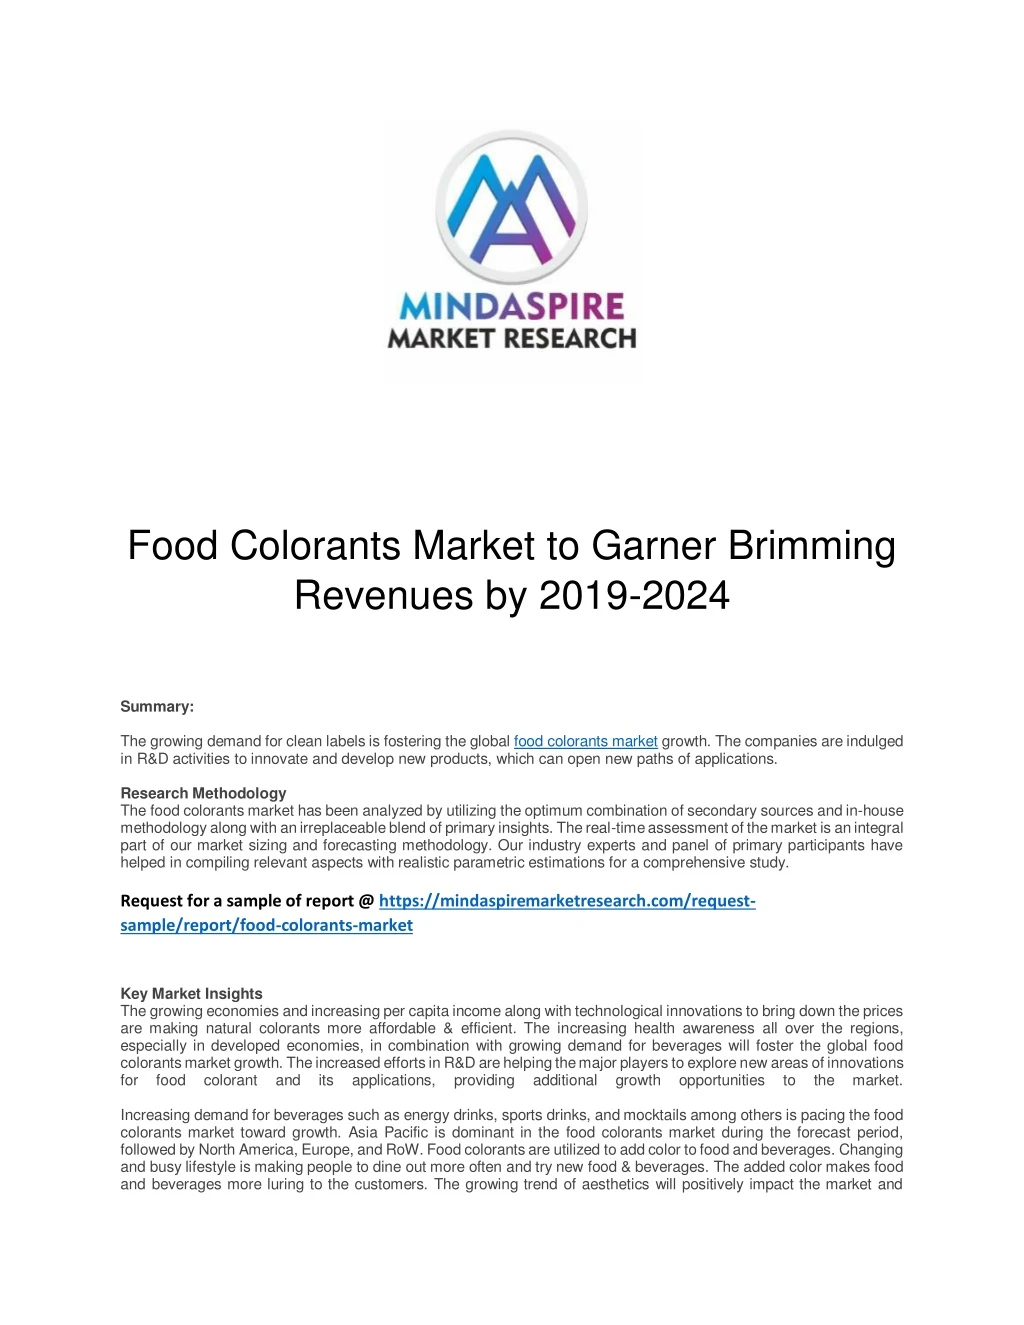 food colorants market to garner brimming revenues